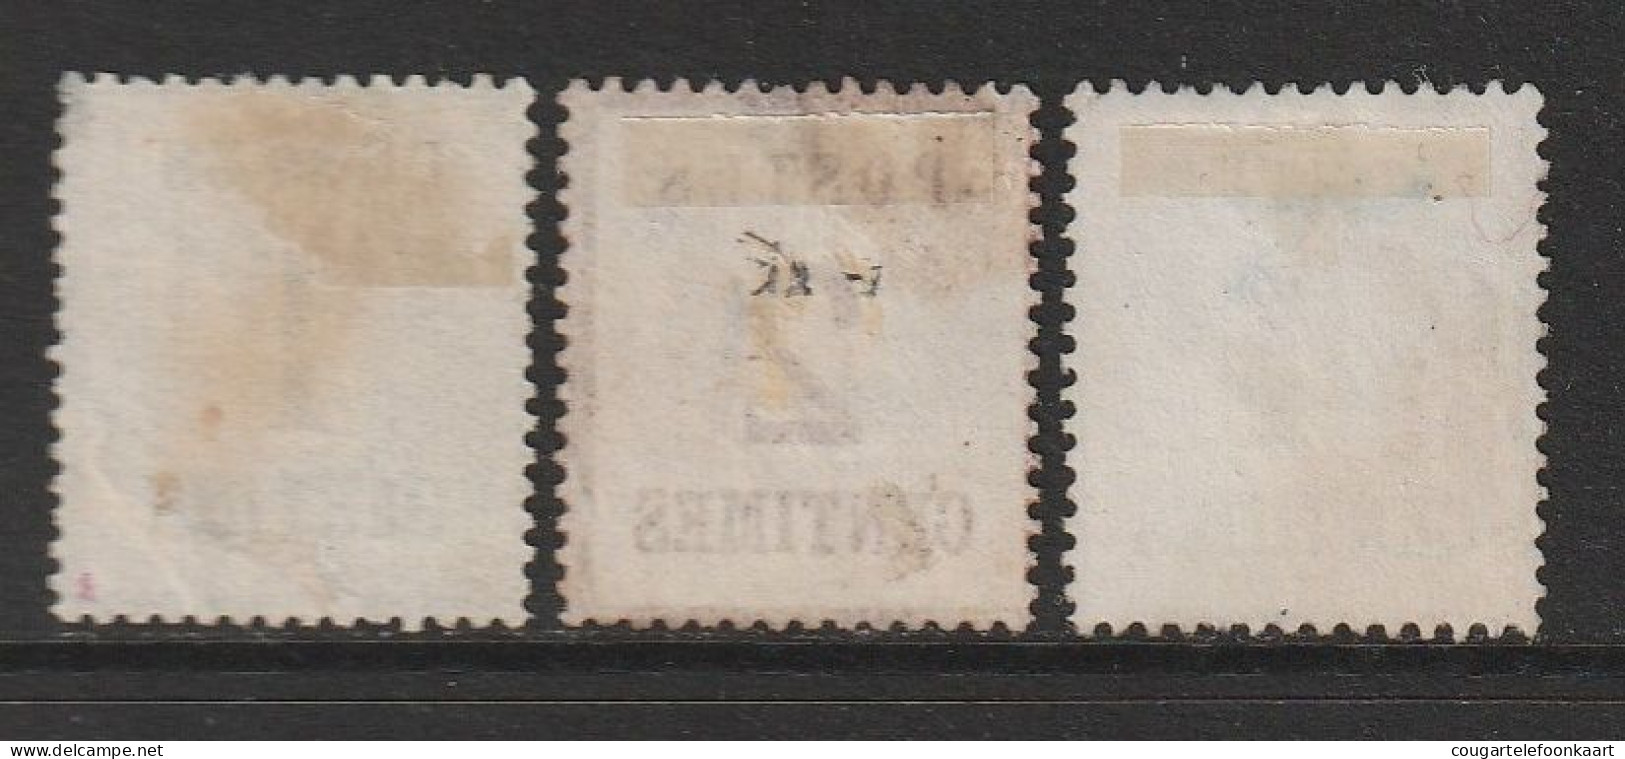 Elsass Und Lothringen, Mi. 1-2-3 Alle Type I, 1 + 2 + 4 Centime(s), Ungebraucht Ohne Gummi - Mint